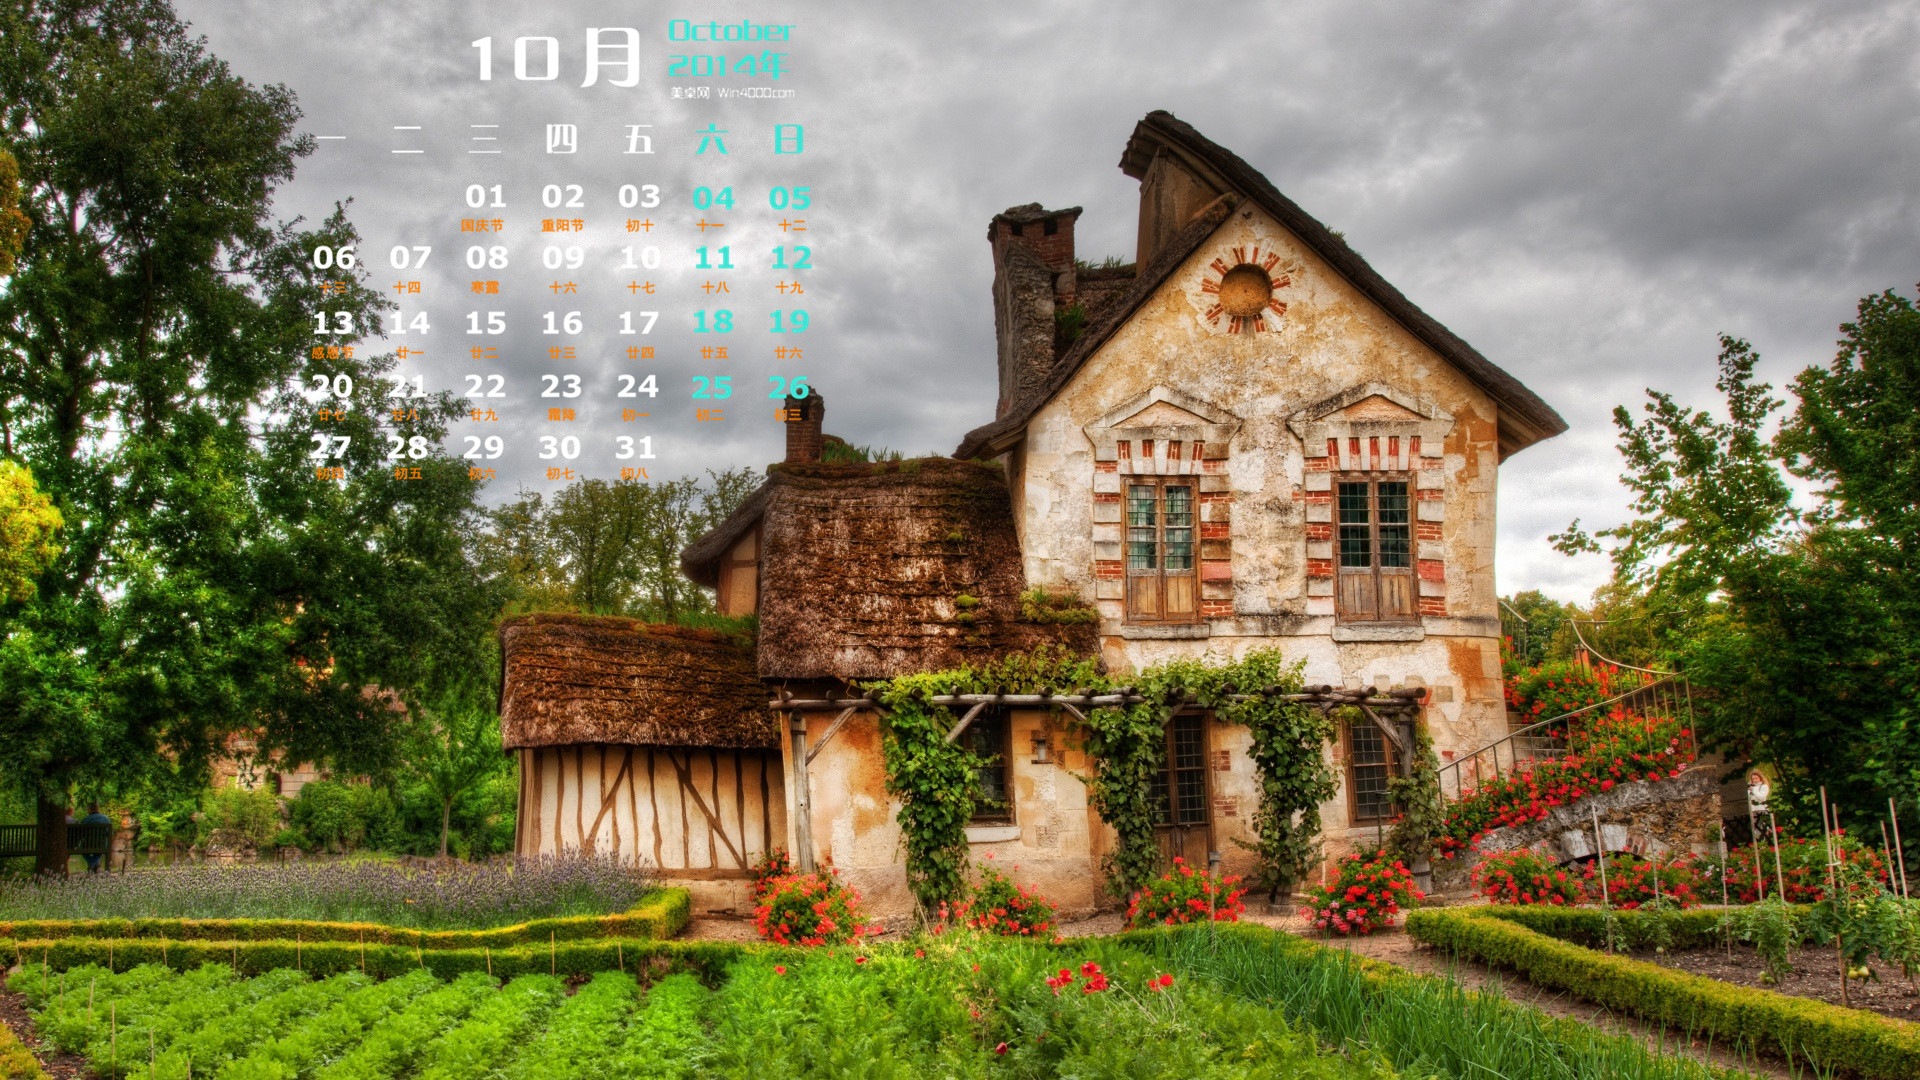 10 2014 wallpaper Calendario (1) #11 - 1920x1080